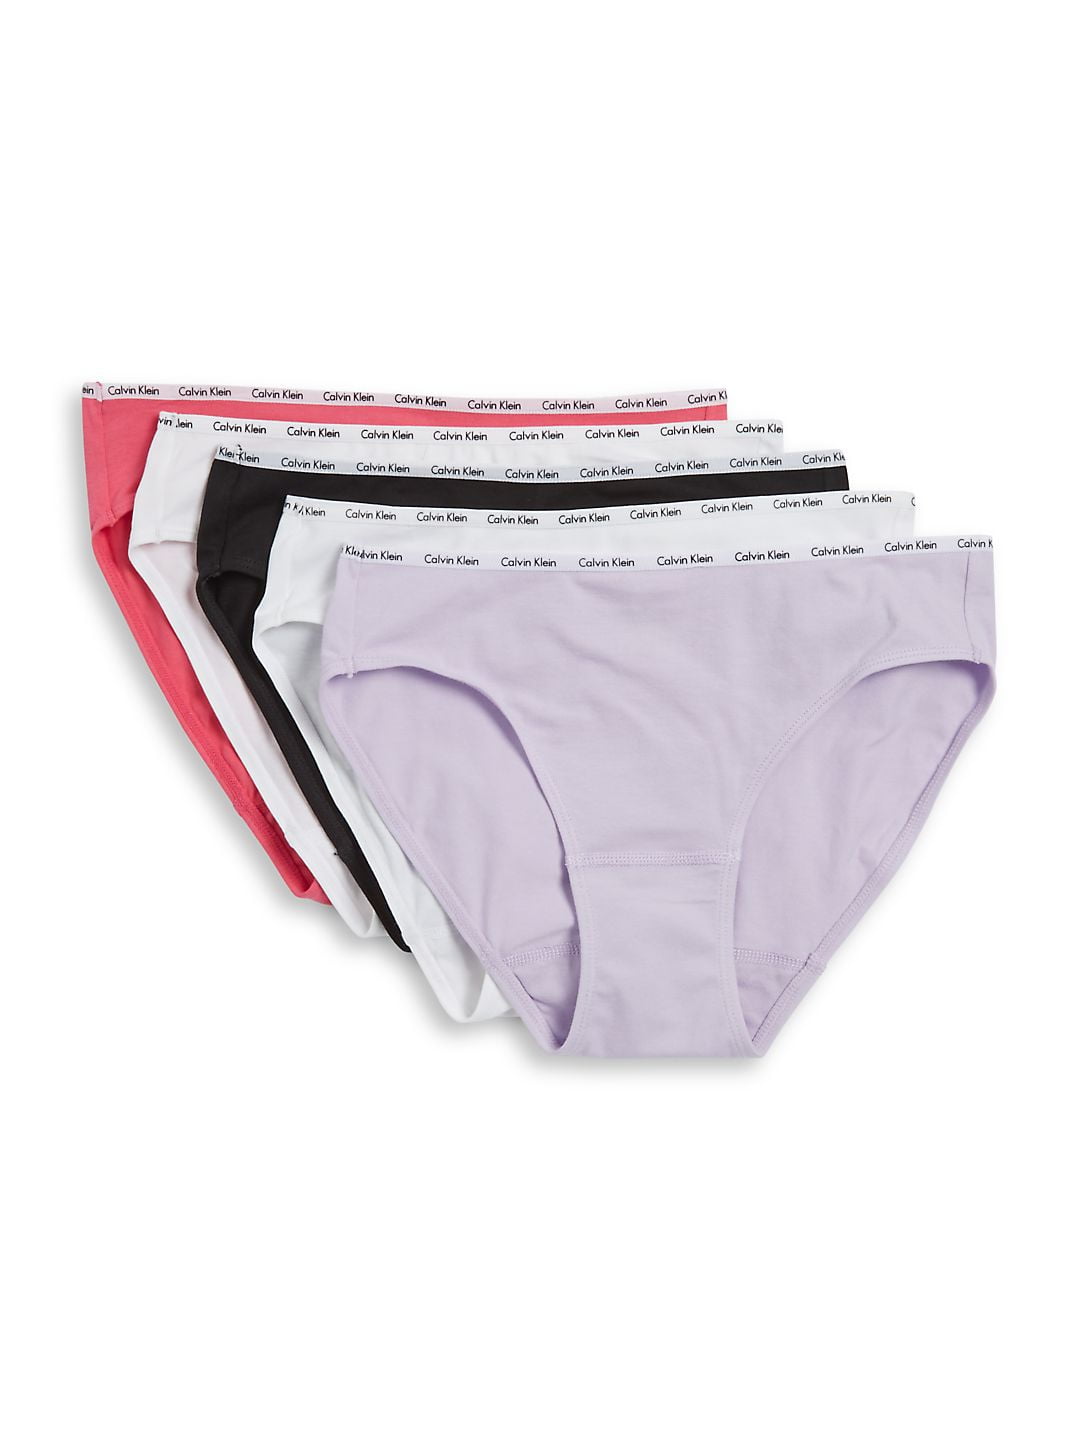 Klein Pack, M Stretch Cotton Calvin 5 Black/White/Grey, Womens Logo Panty Bikini